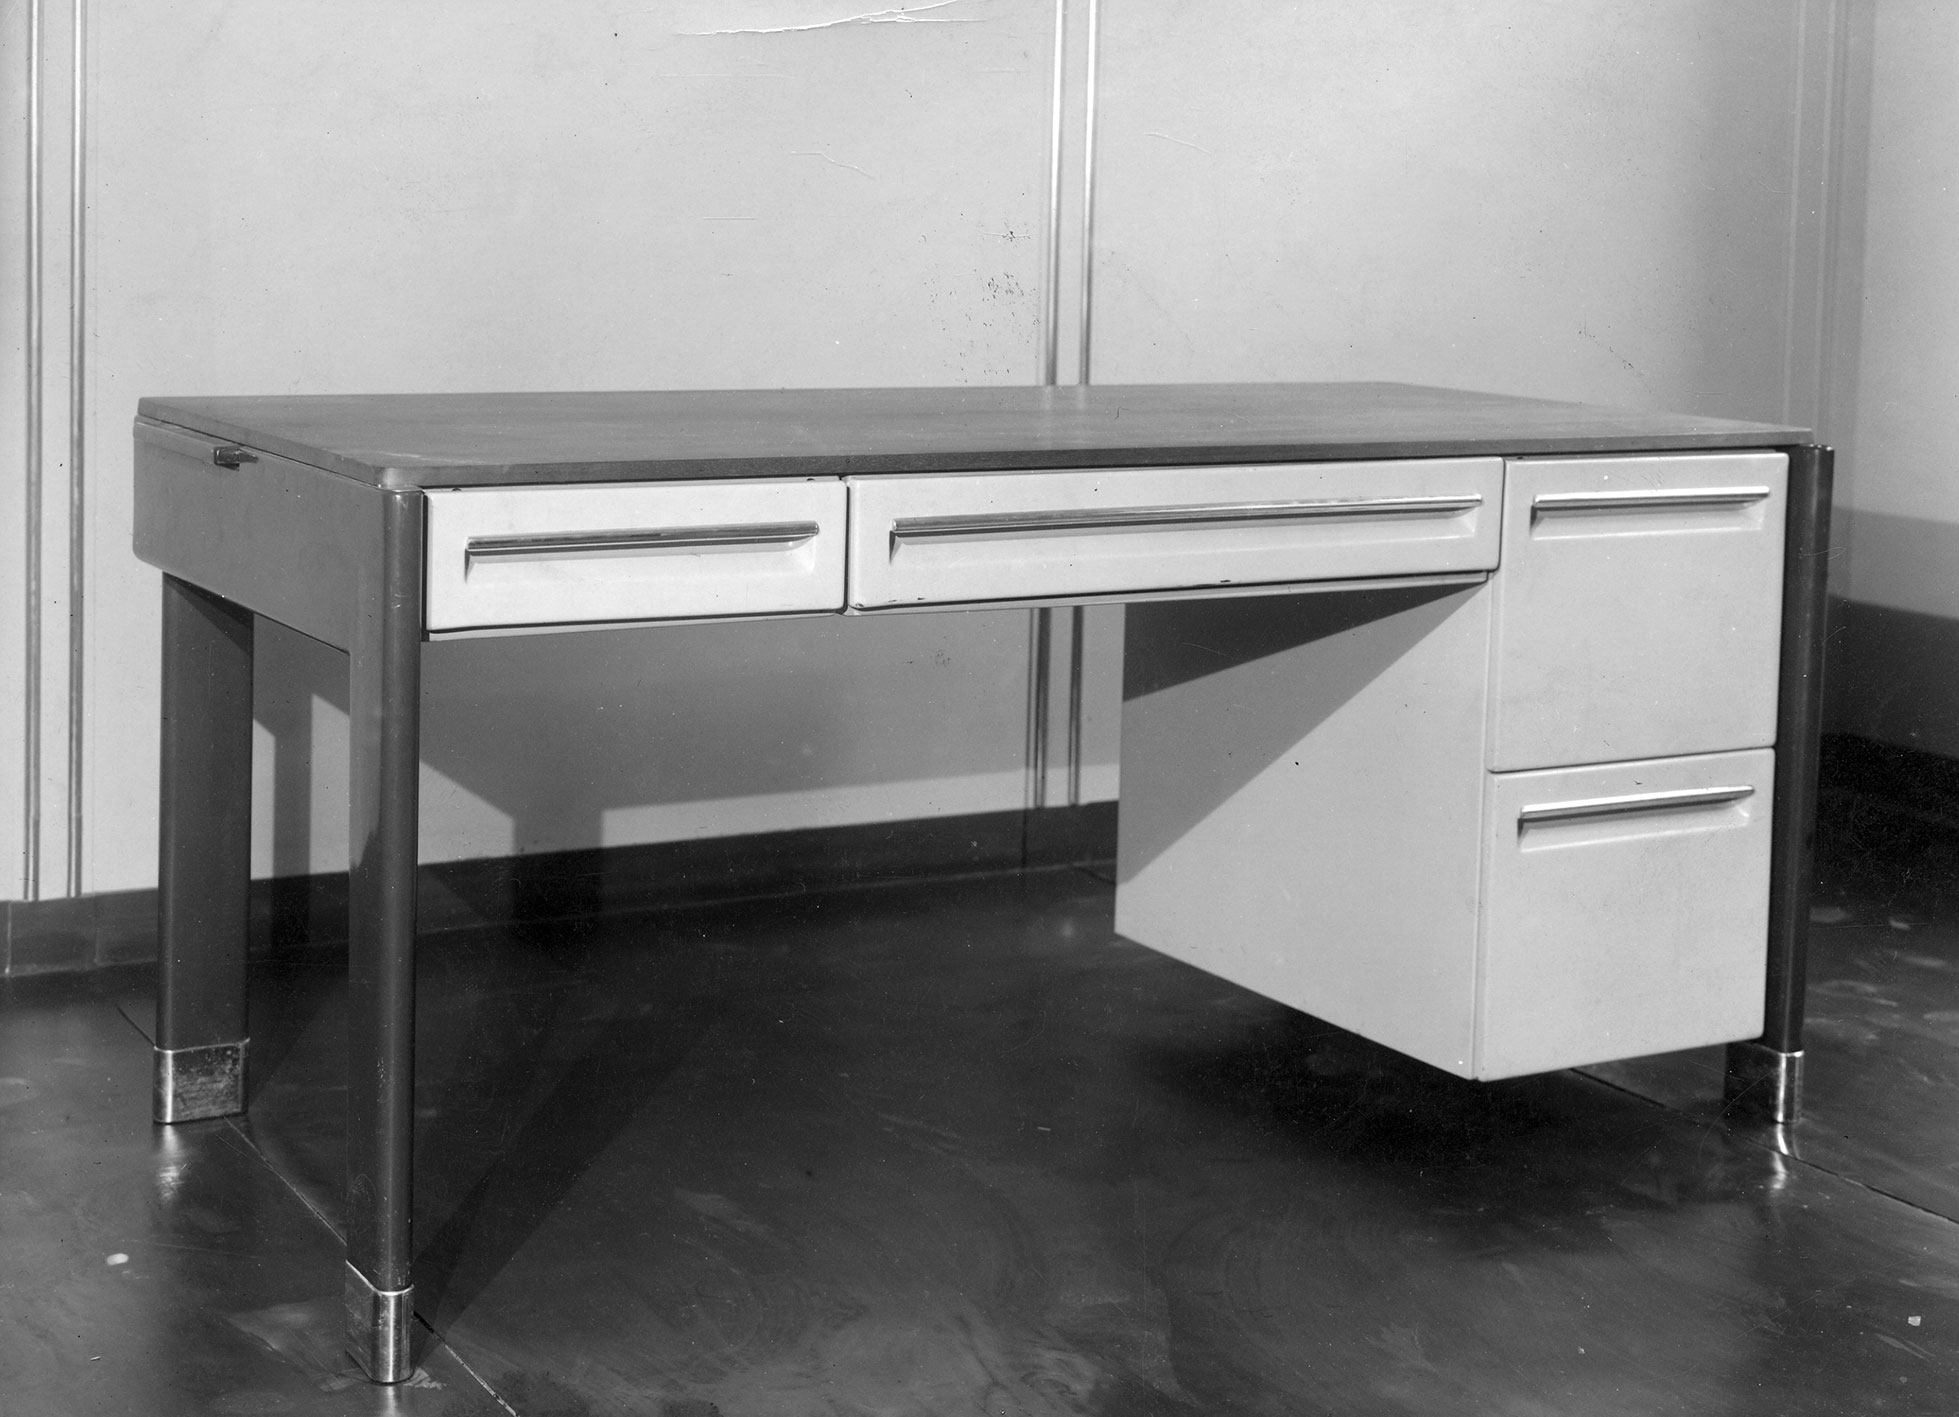 Bureau type CPDE à équipements variables, modèle de série, avec équipement n° 2 et sabots en acier inoxydable, c. 1936.